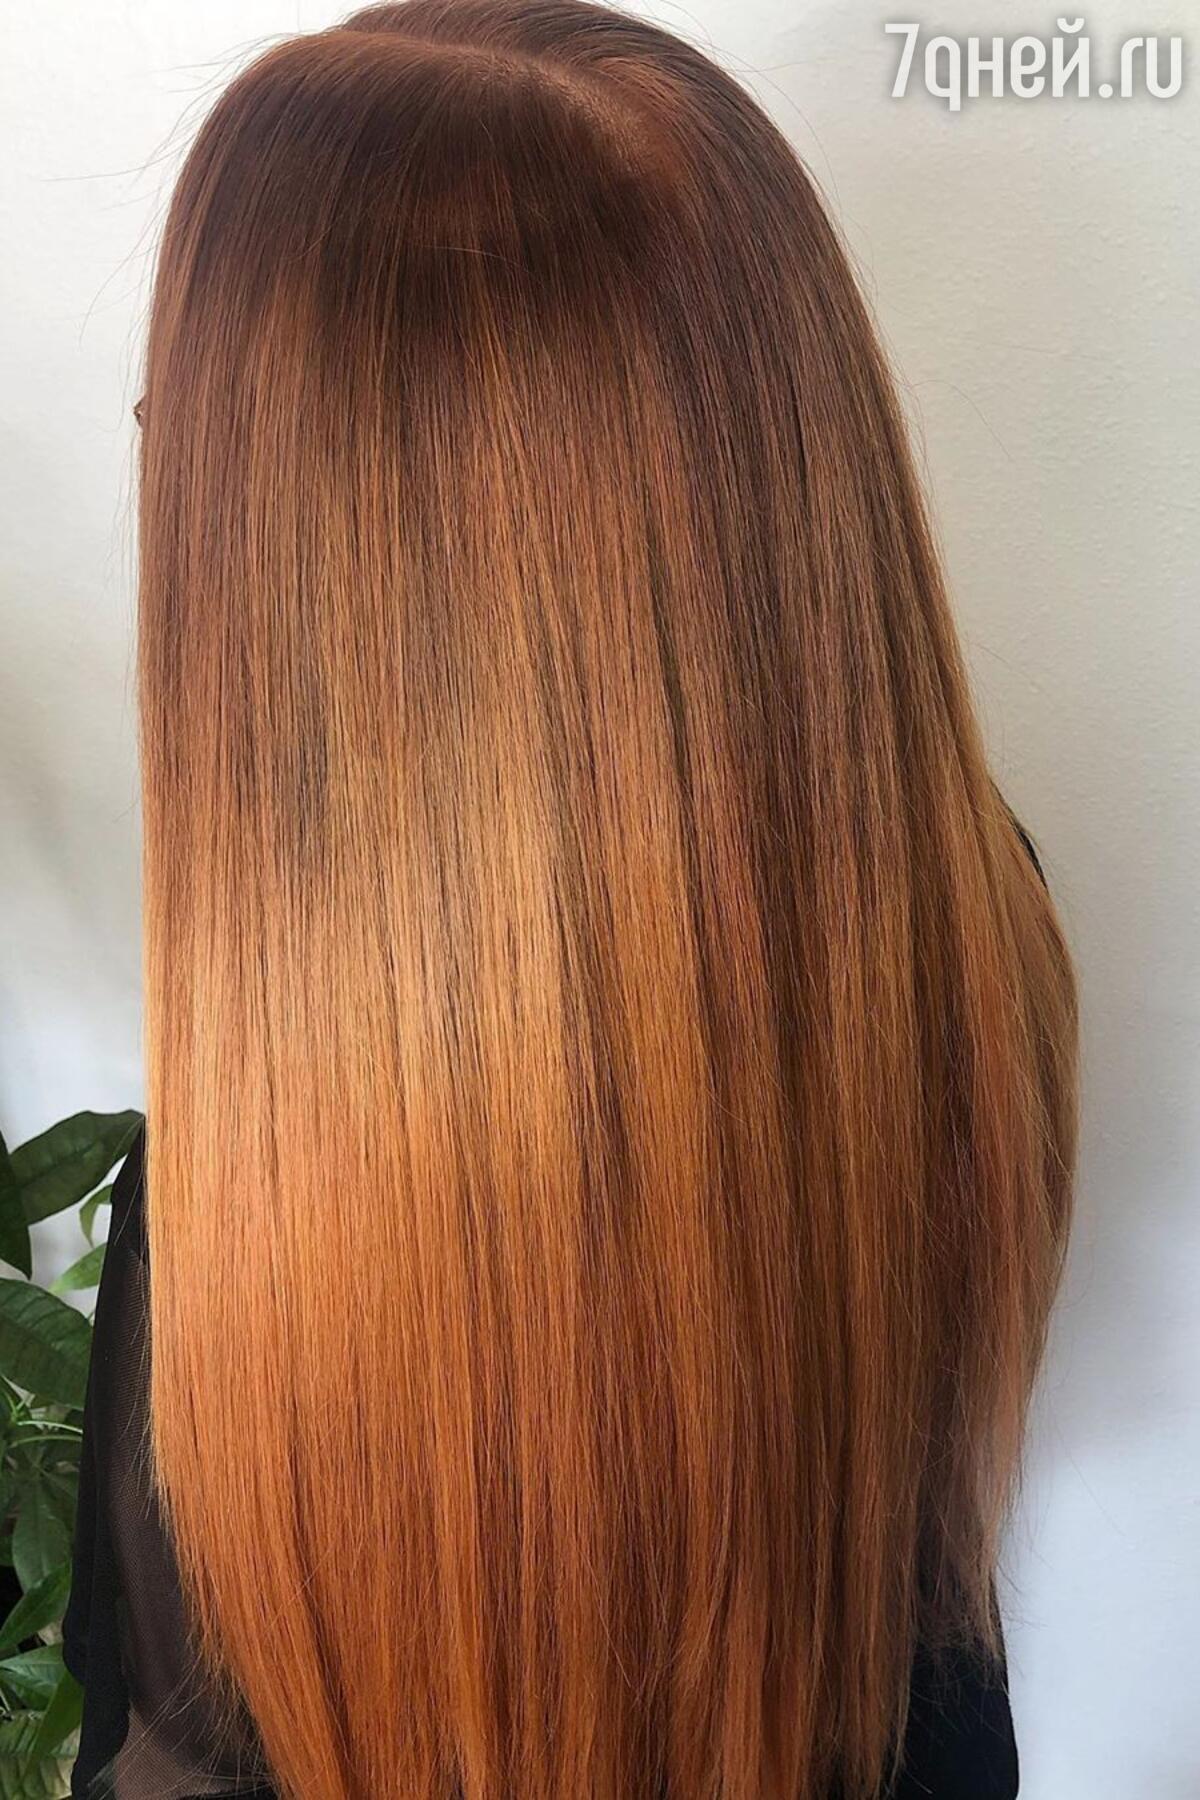 Как окрасить волосы хной и басмой в коричневый цвет?